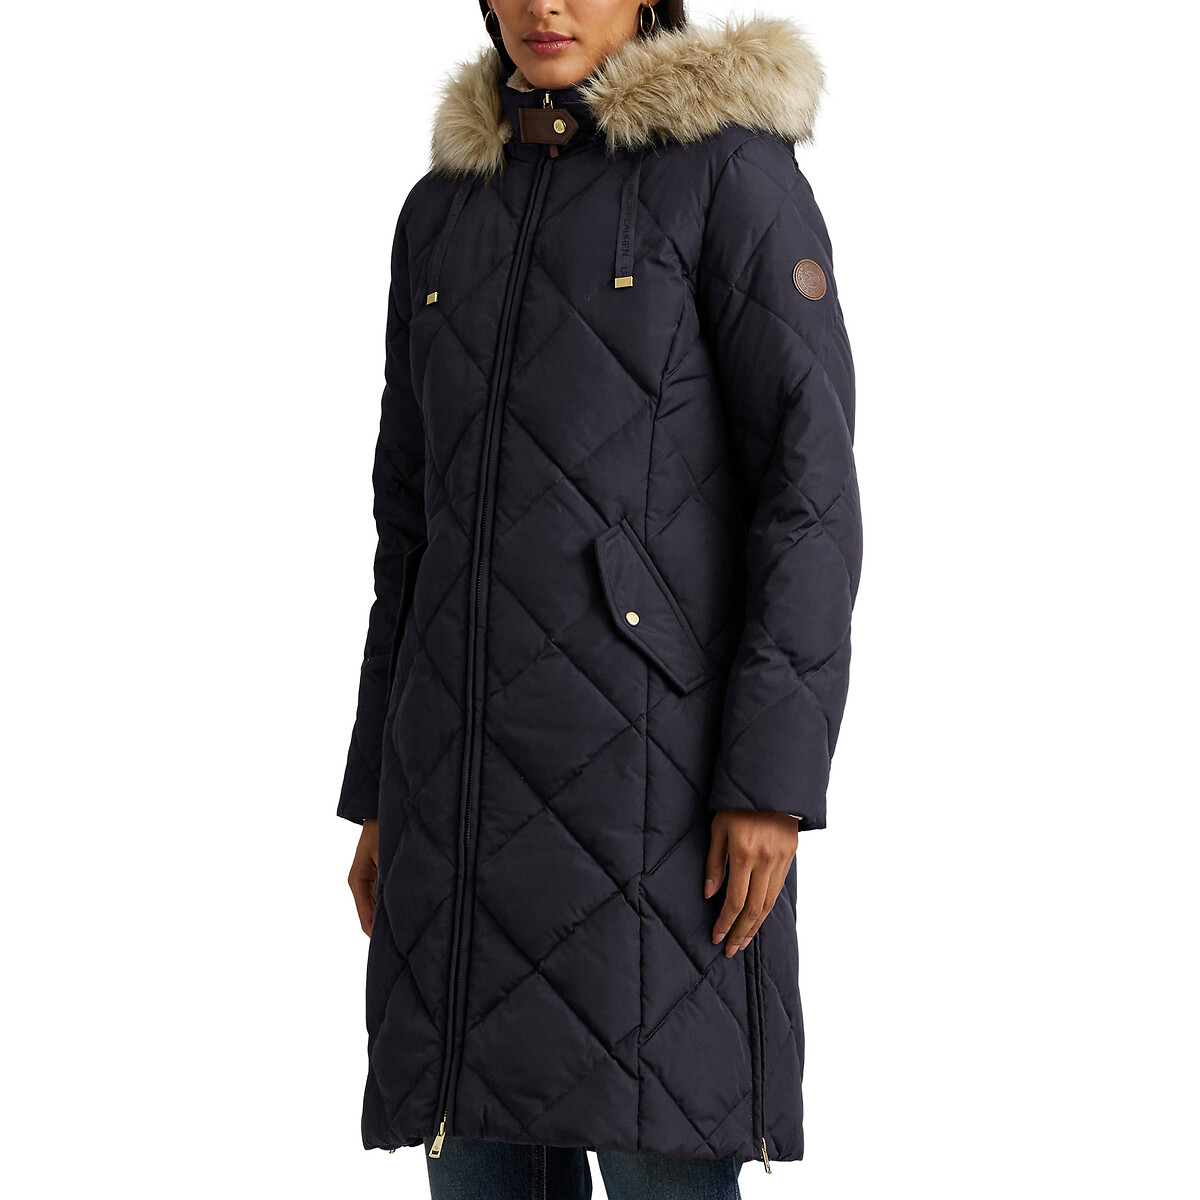 Куртка стеганая средней длины с капюшоном с оторочкой мехом XS синий куртка стеганая средней длины с капюшоном с оторочкой мехом xs синий